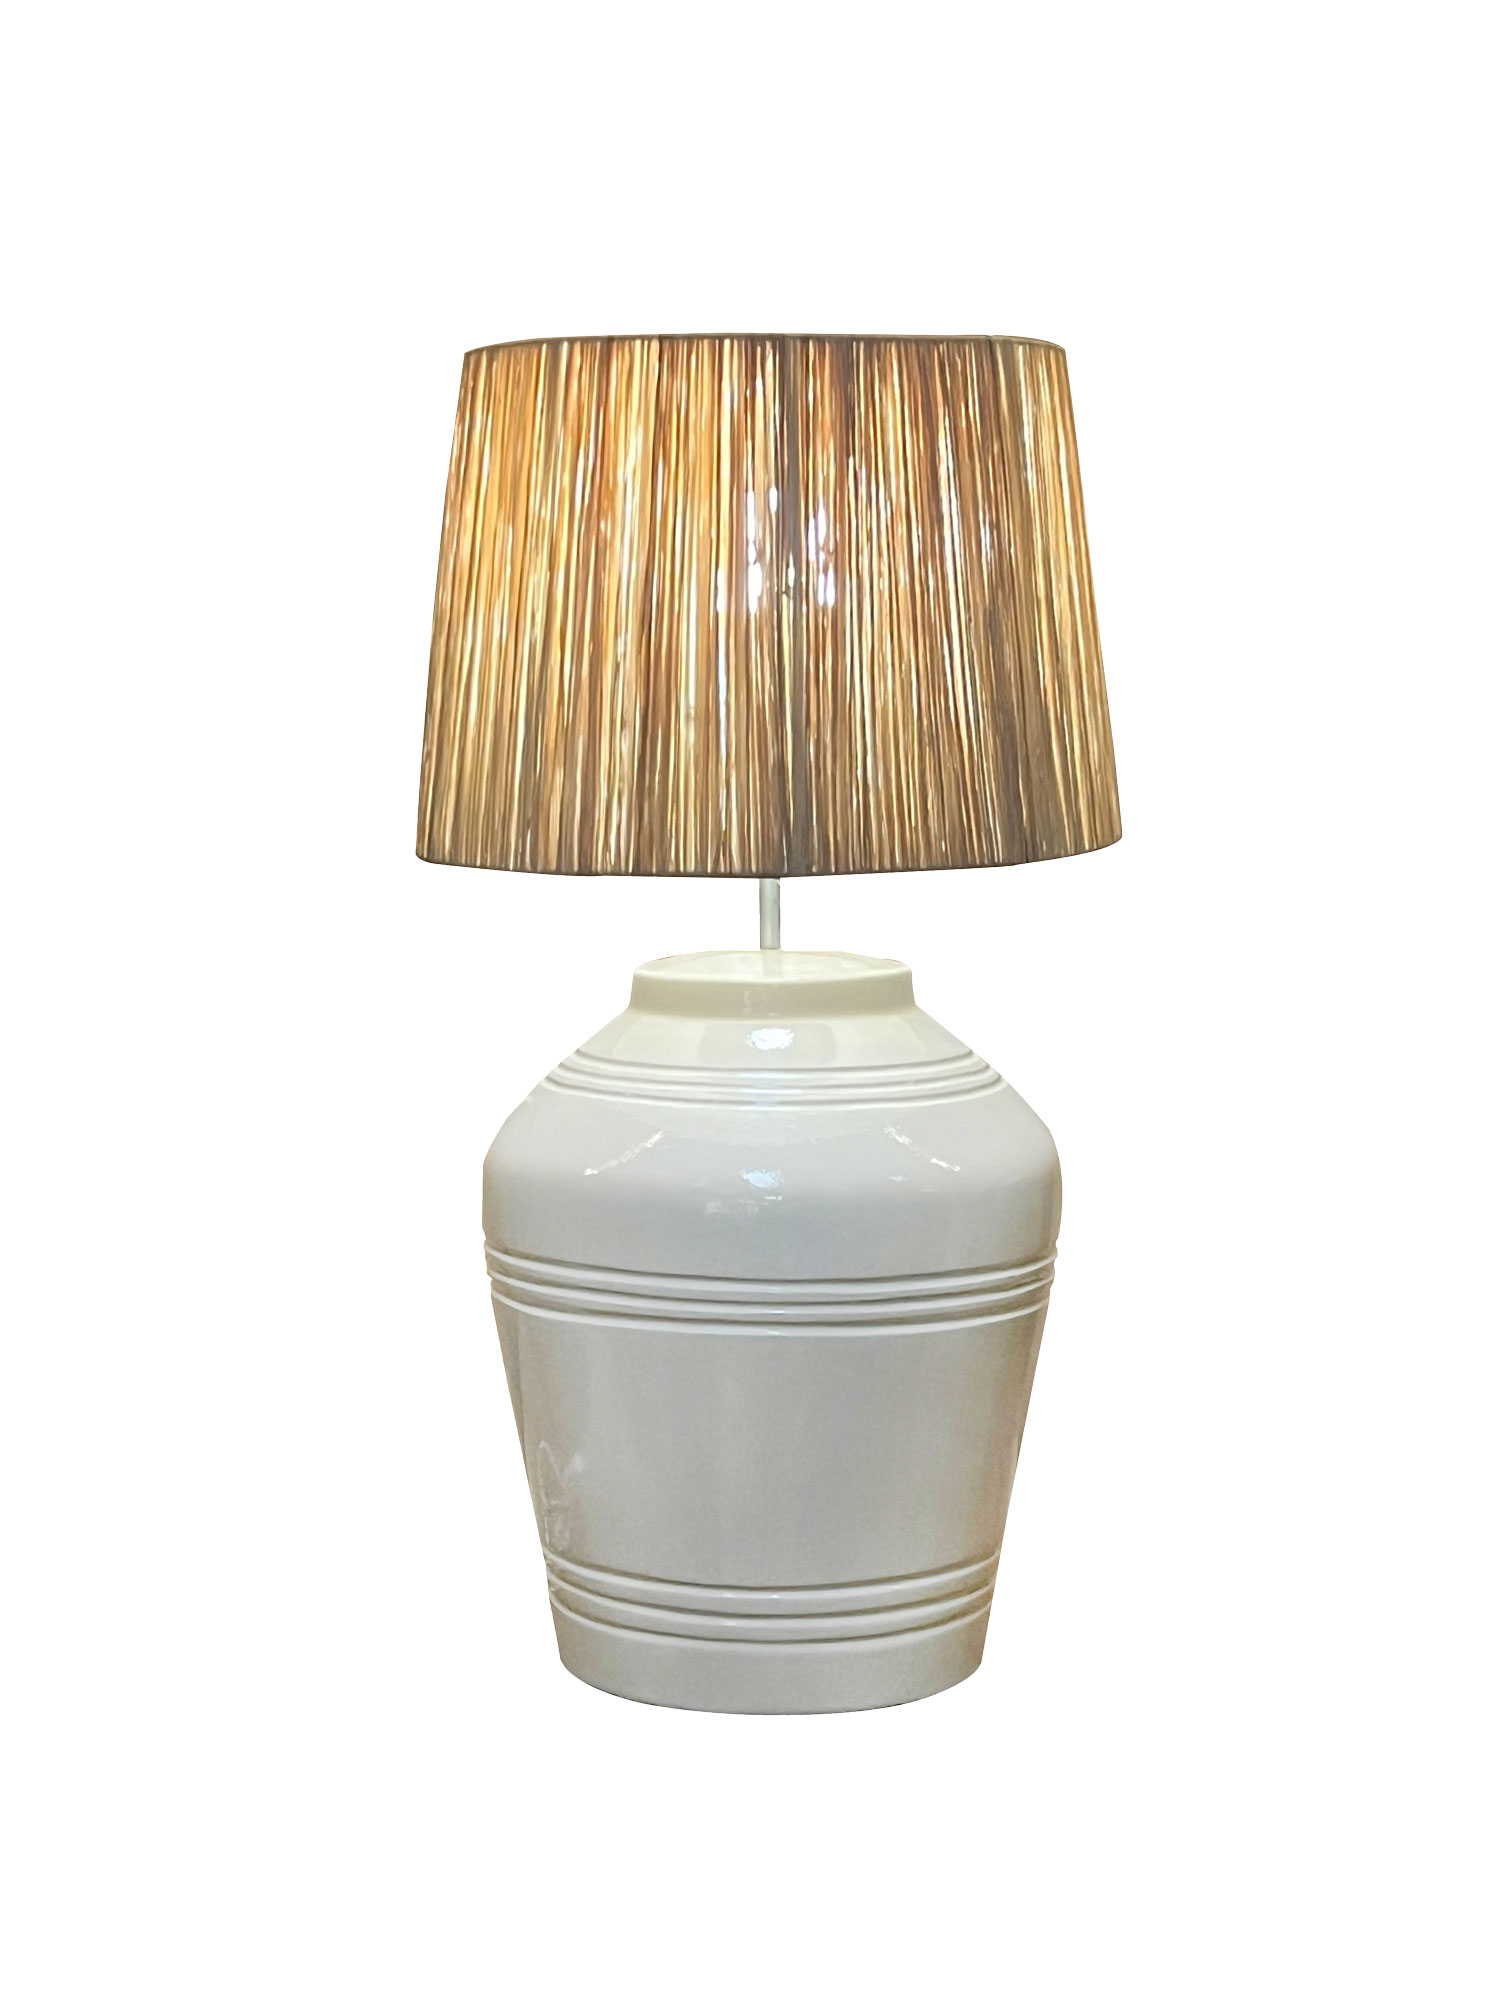 cream white ceramic lamp base